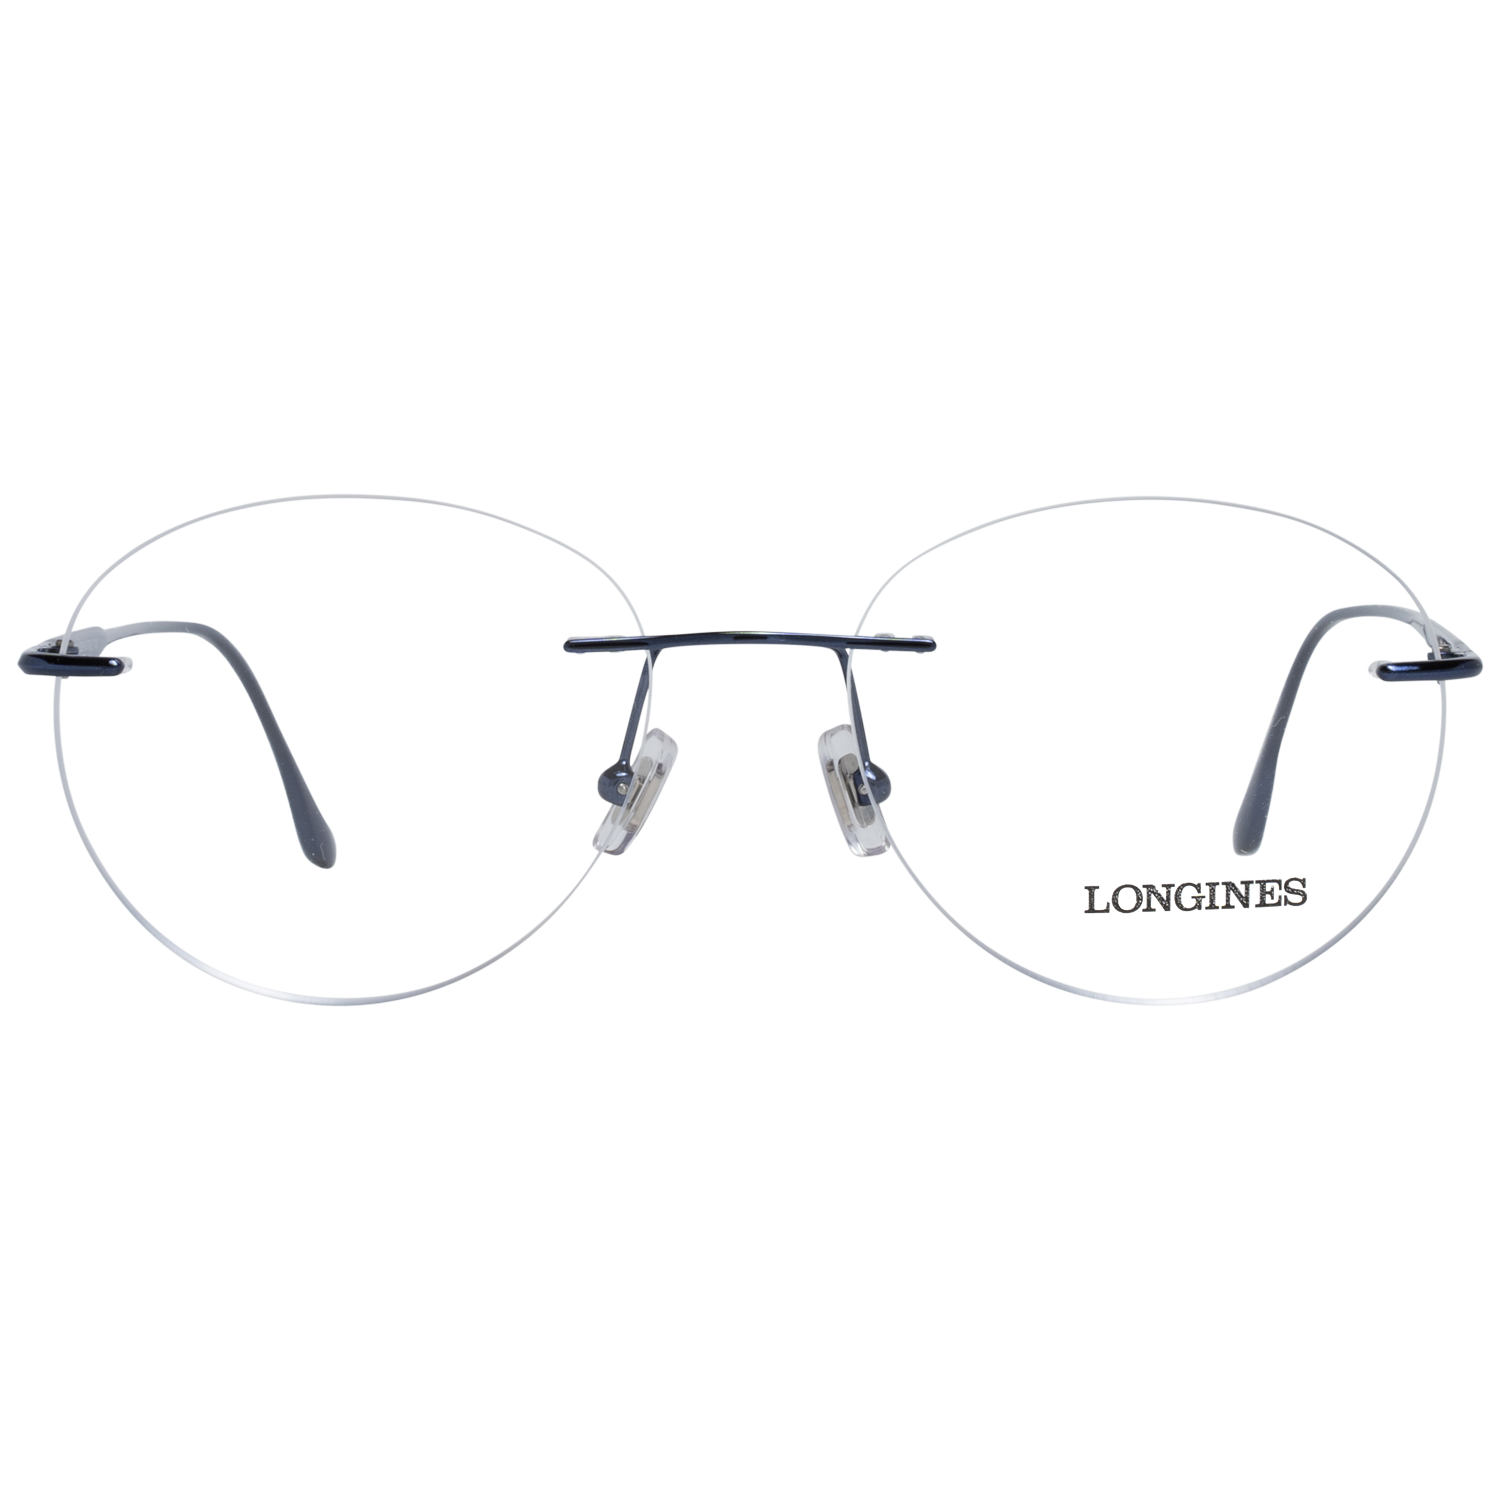 Longines Frames Longines Optical Frame LG5002-H 090 53 Eyeglasses Eyewear UK USA Australia 